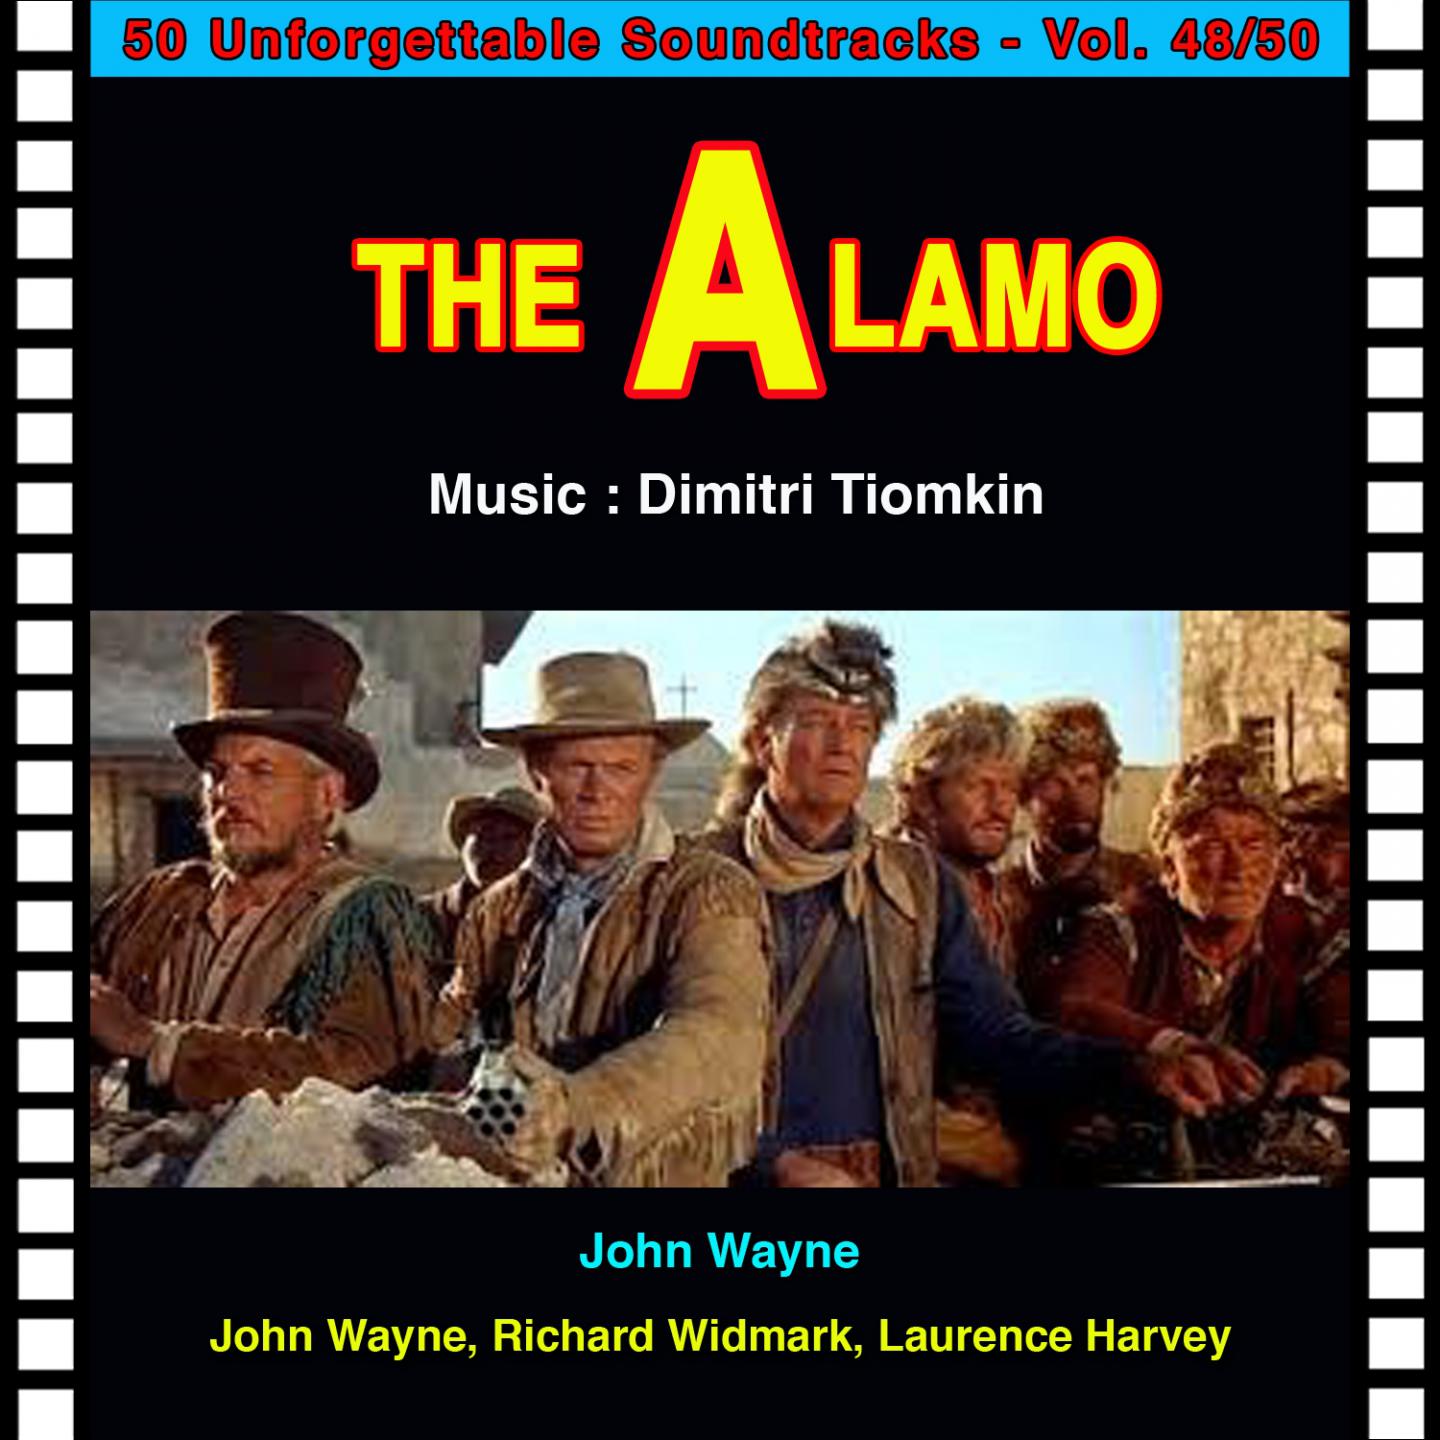 Ballad of the Alamo (Sung) (Alamo - The Alamo)